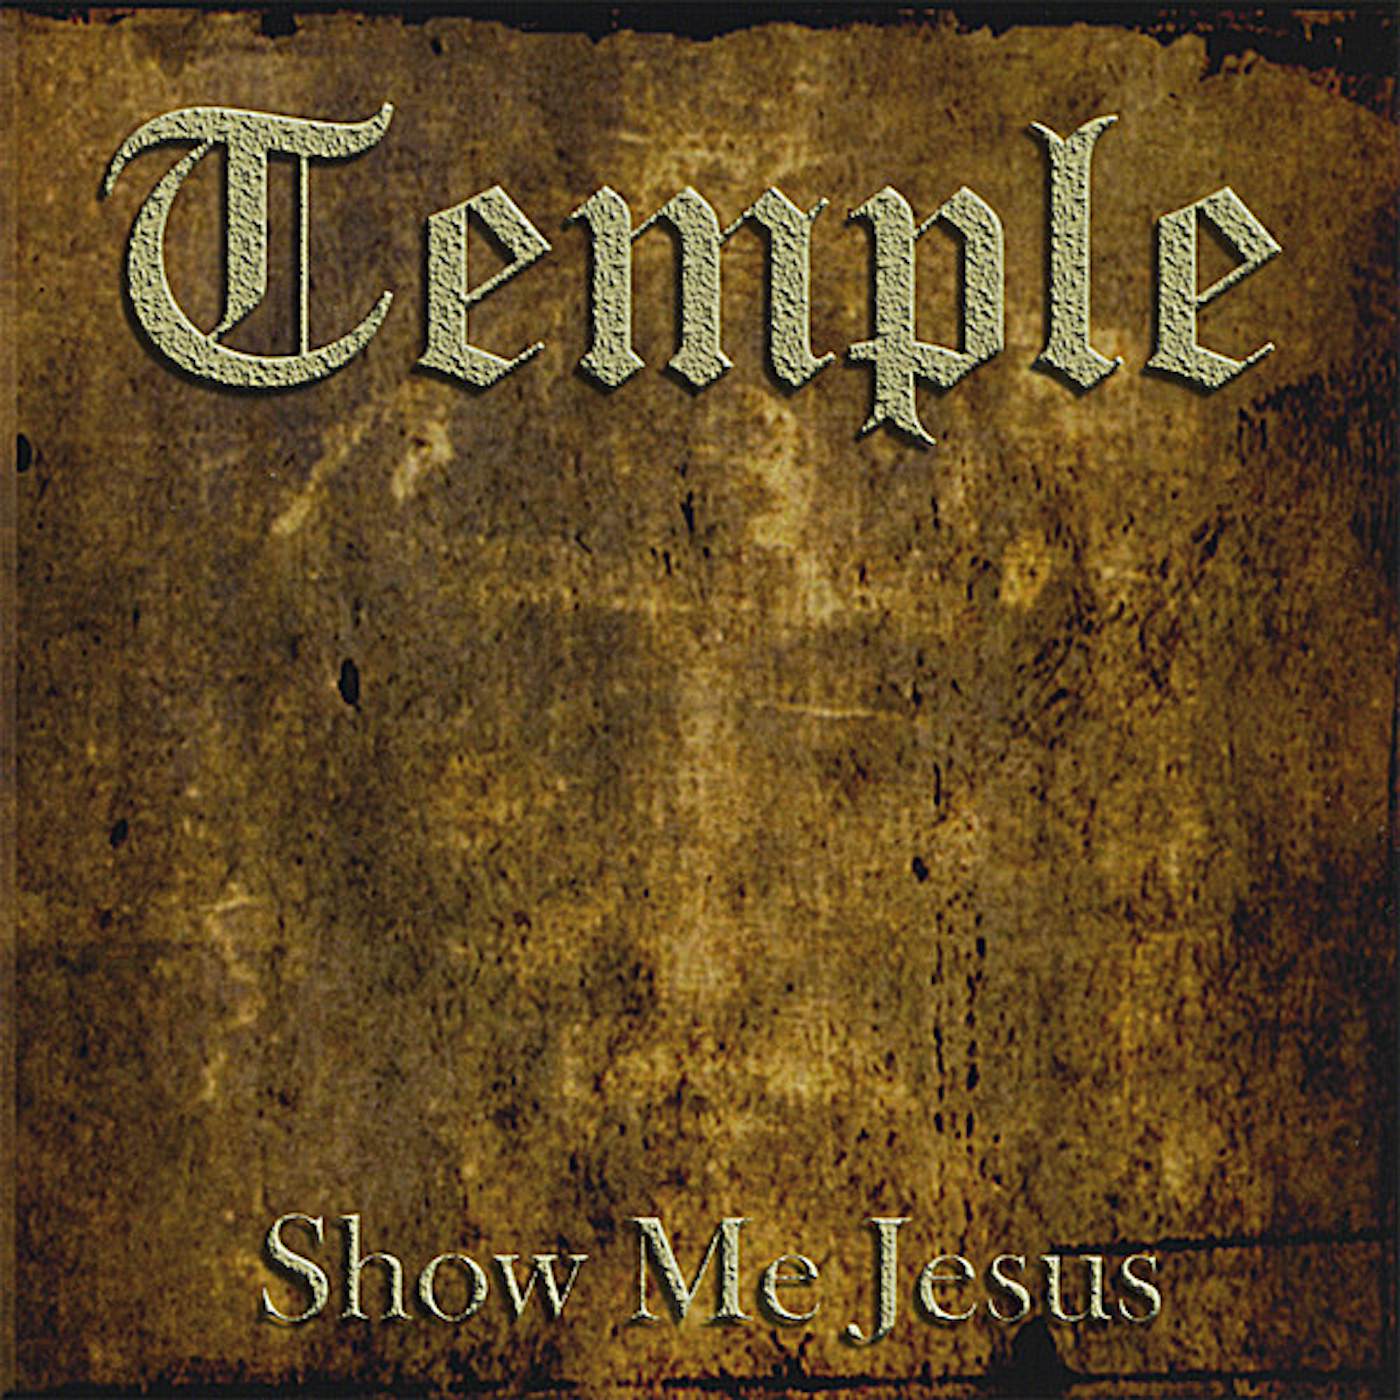 Temple SHOW ME JESUS CD